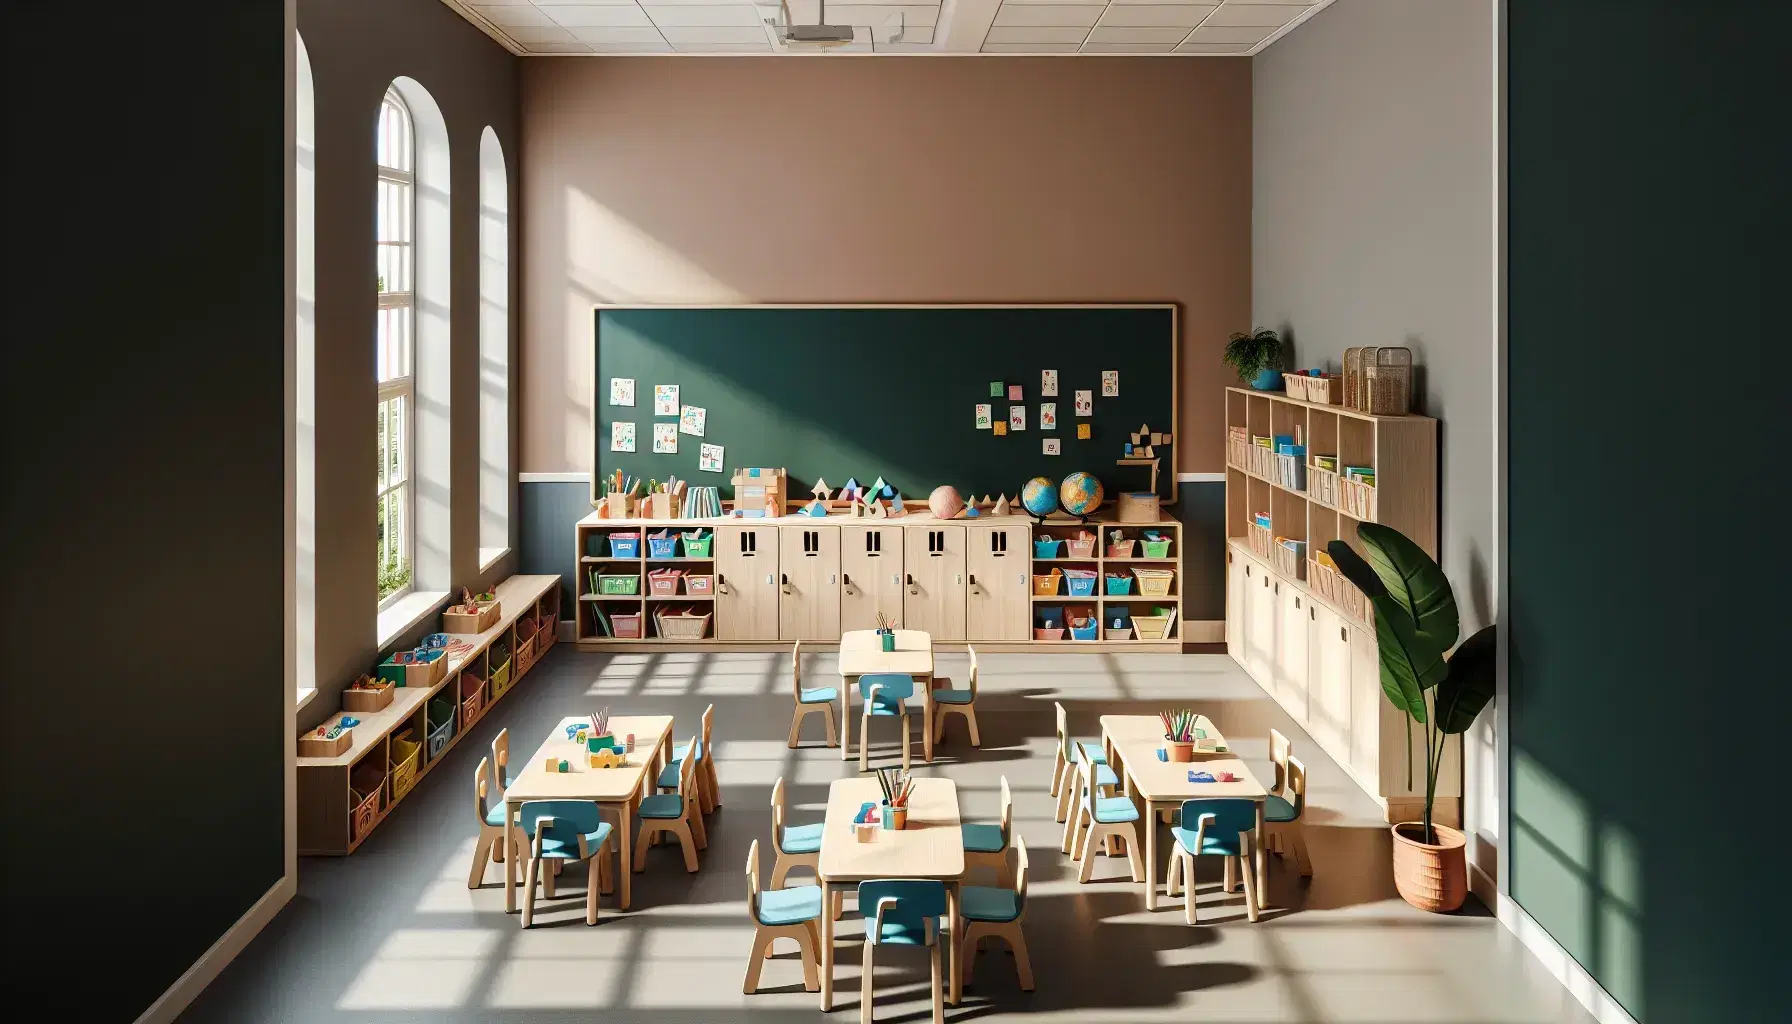 Aula de primaria con mesas agrupadas, sillas azules, pizarra verde, estanterías con libros y objetos didácticos, planta y globo terráqueo.